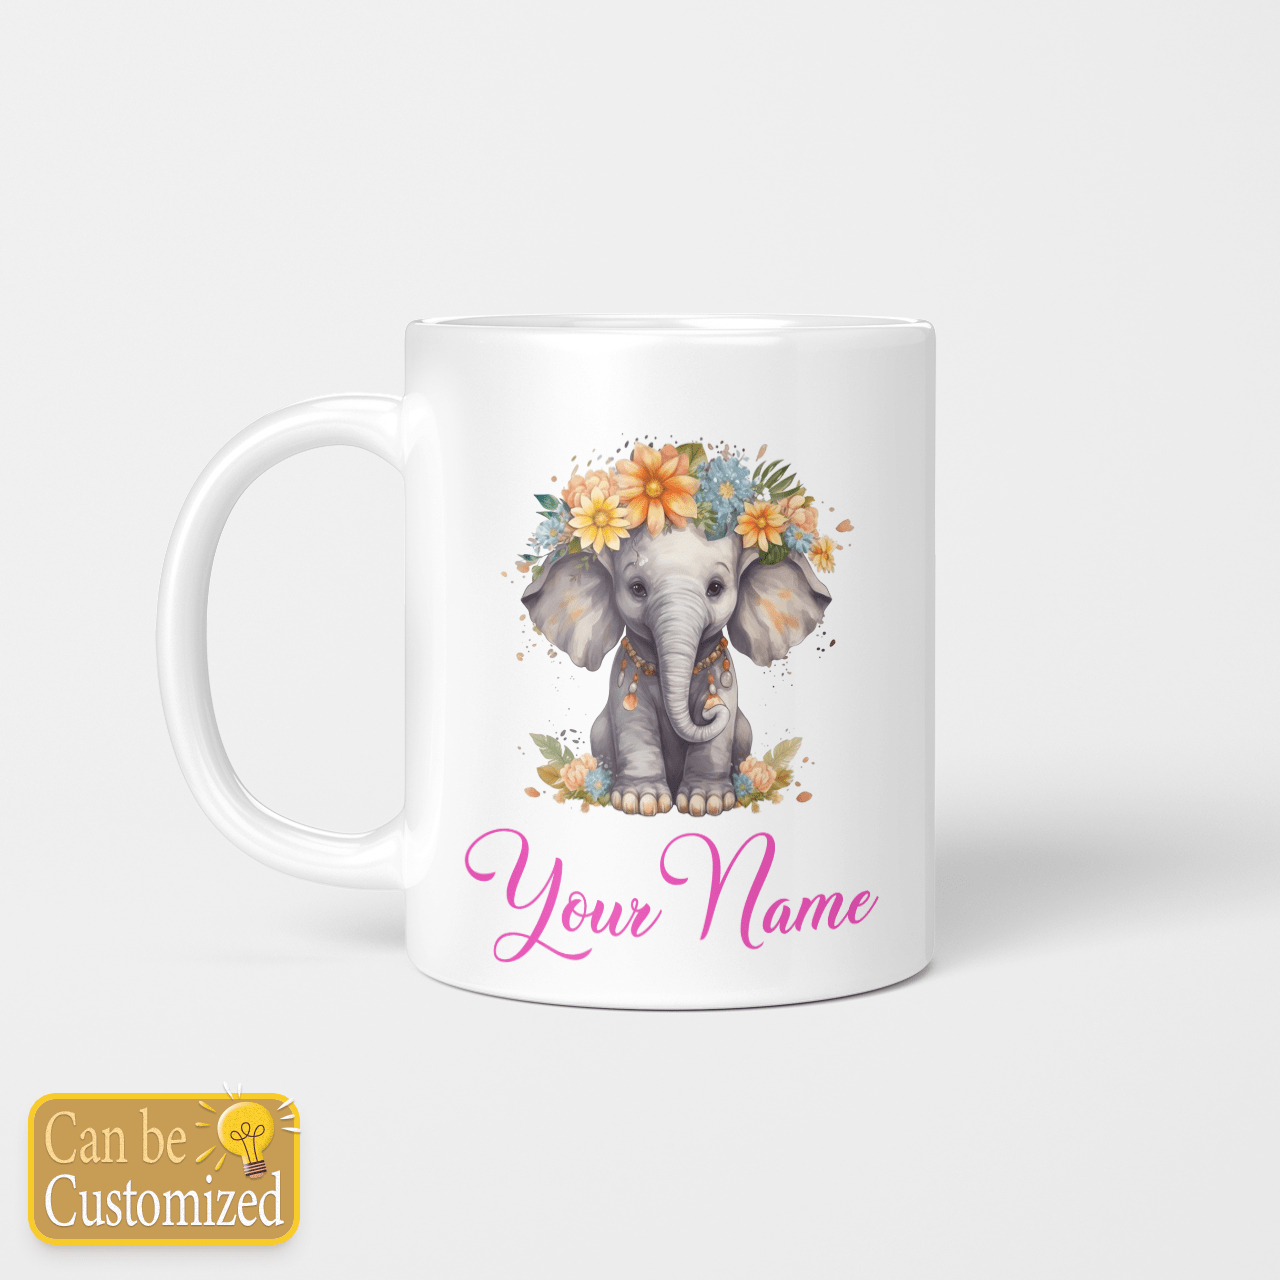 Elephant Mug Personalization Name - Elephant Custom Name Mug